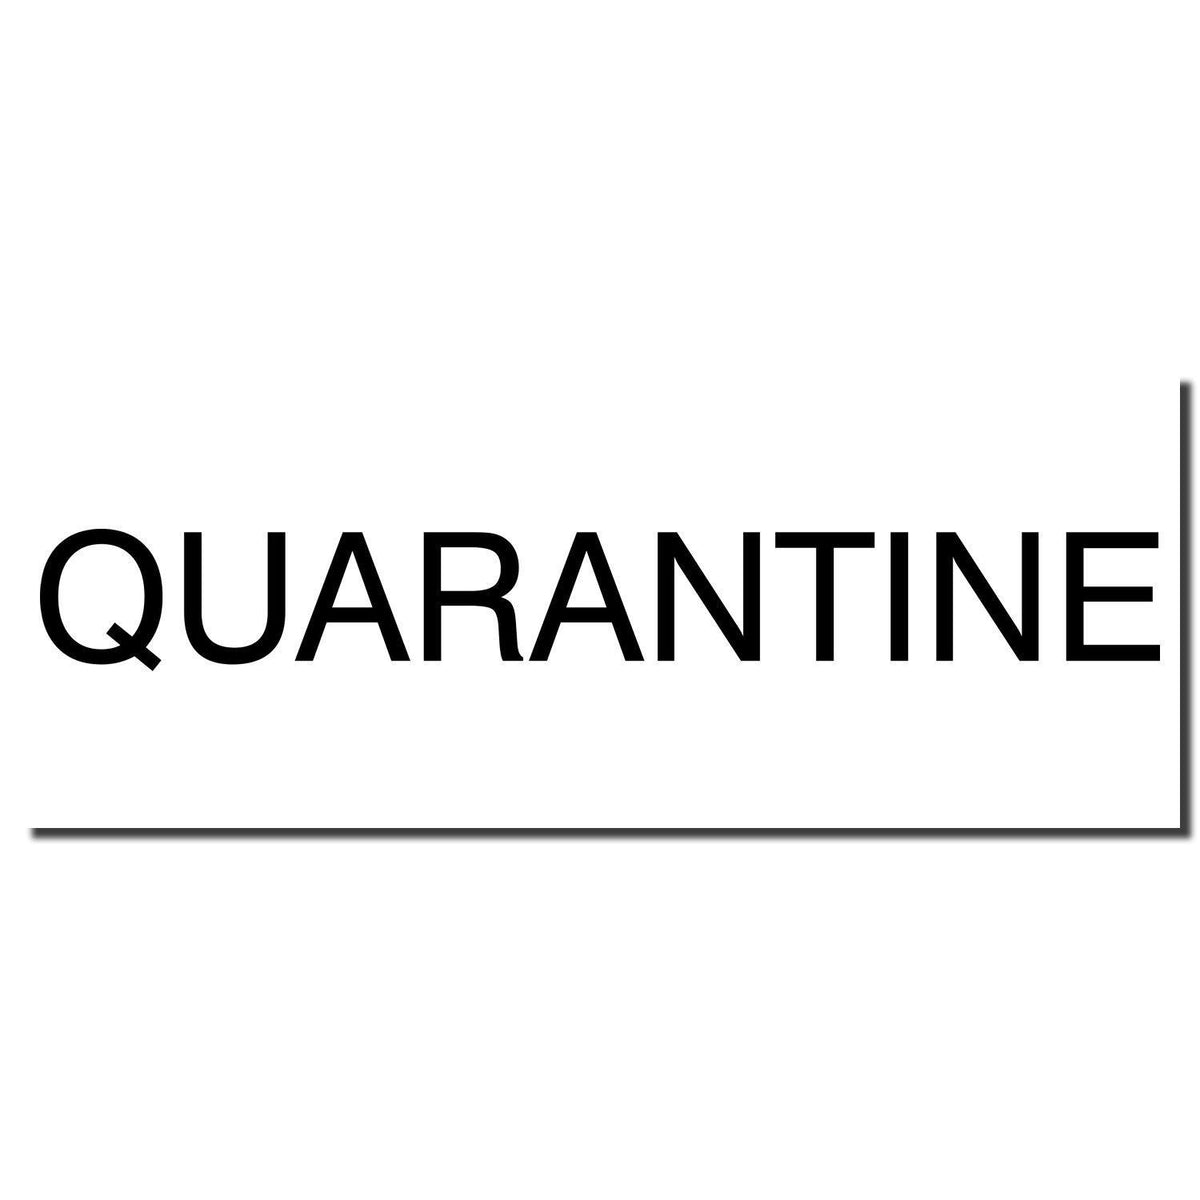 Enlarged Imprint Large Quarantine Rubber Stamp Sample